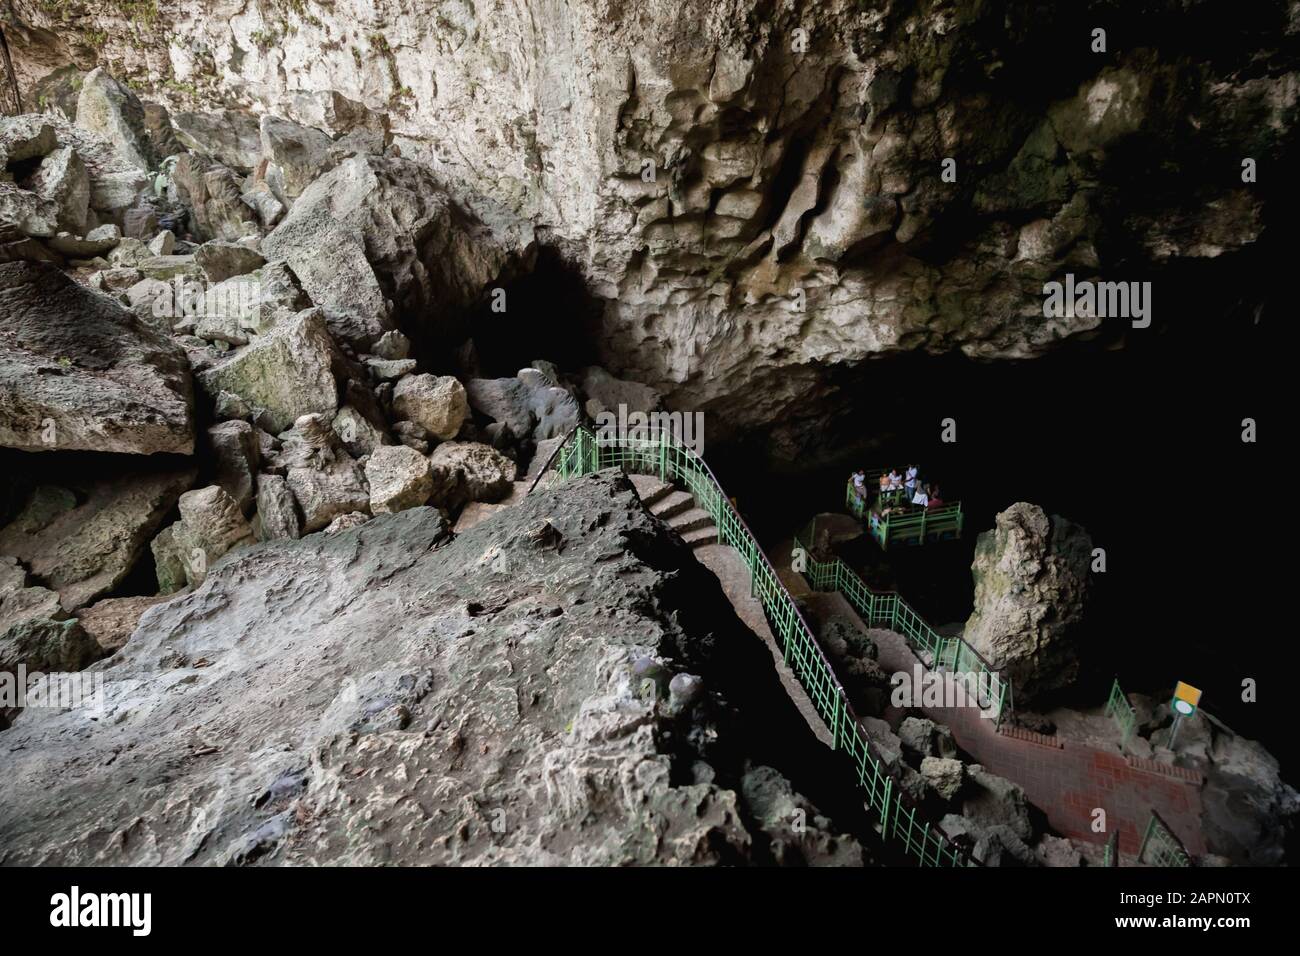 Lago sotterraneo e piccolo traghetto del Los Tres Ojos. Grotta di pietra calcarea all'aperto situata nel parco Mirador del Este, a Santo Domingo, Repubblica Dominicana Foto Stock